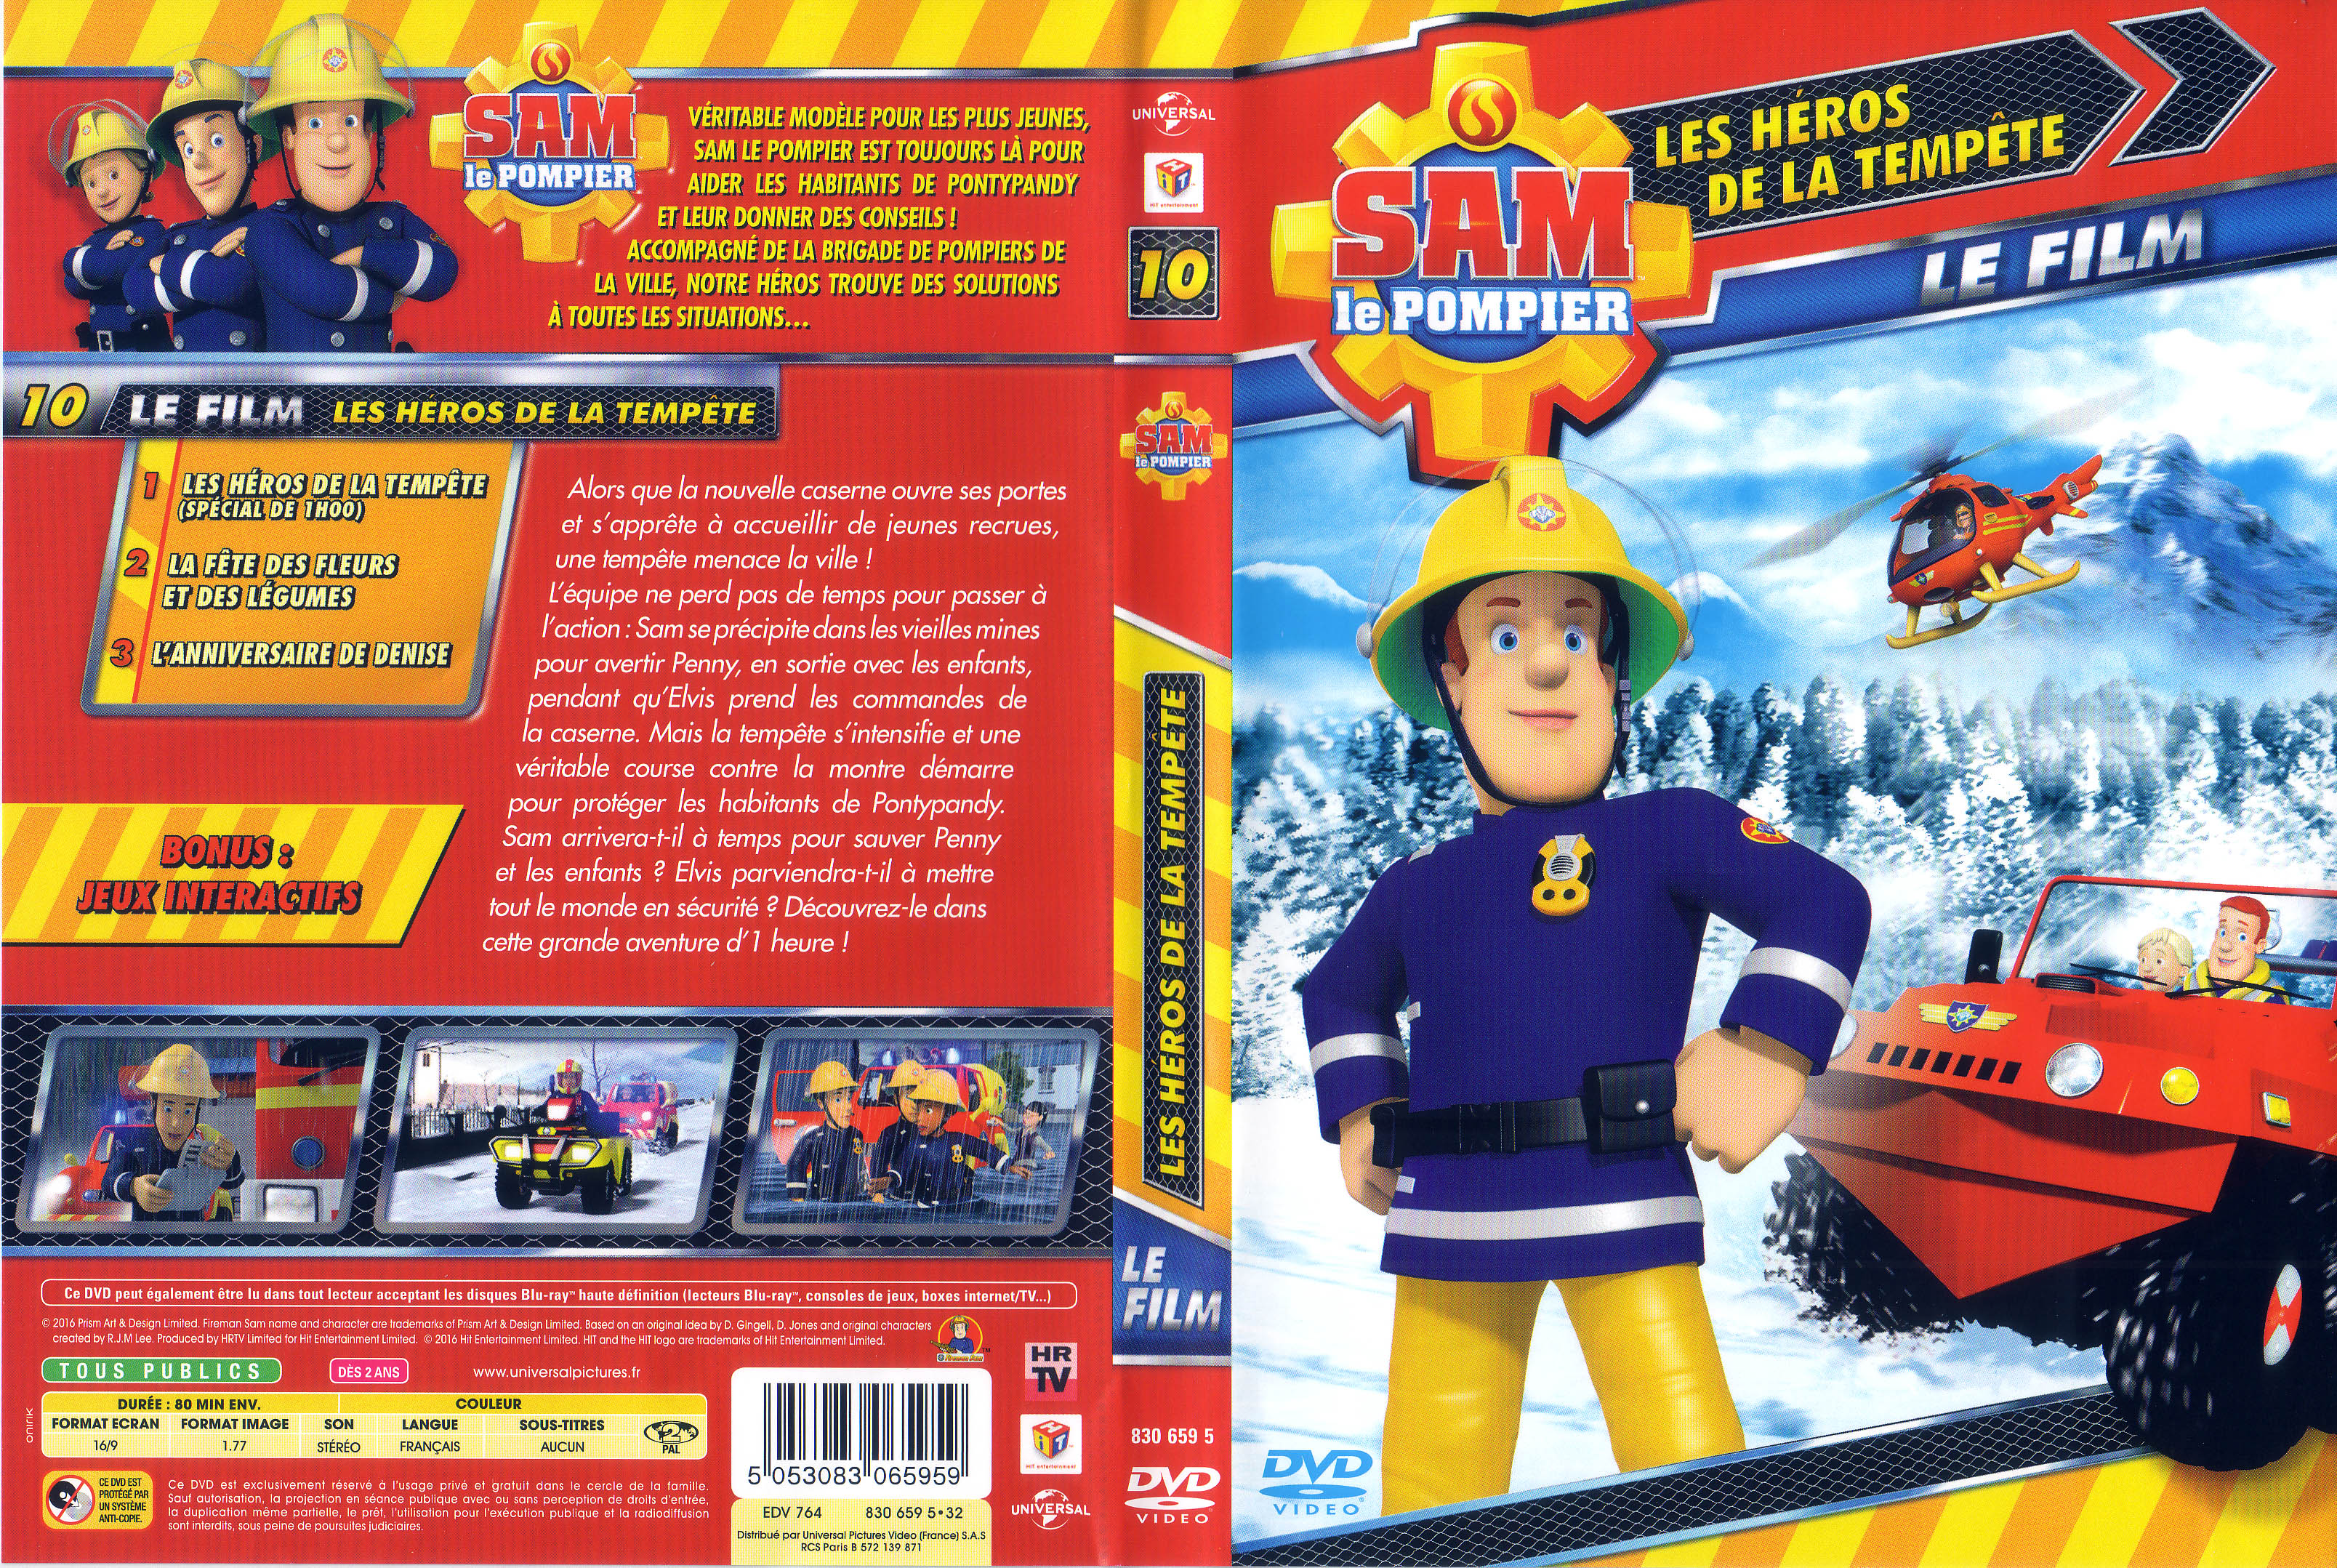 Jaquette DVD Sam le pompier - Volume 10 - Les heros de la tempete